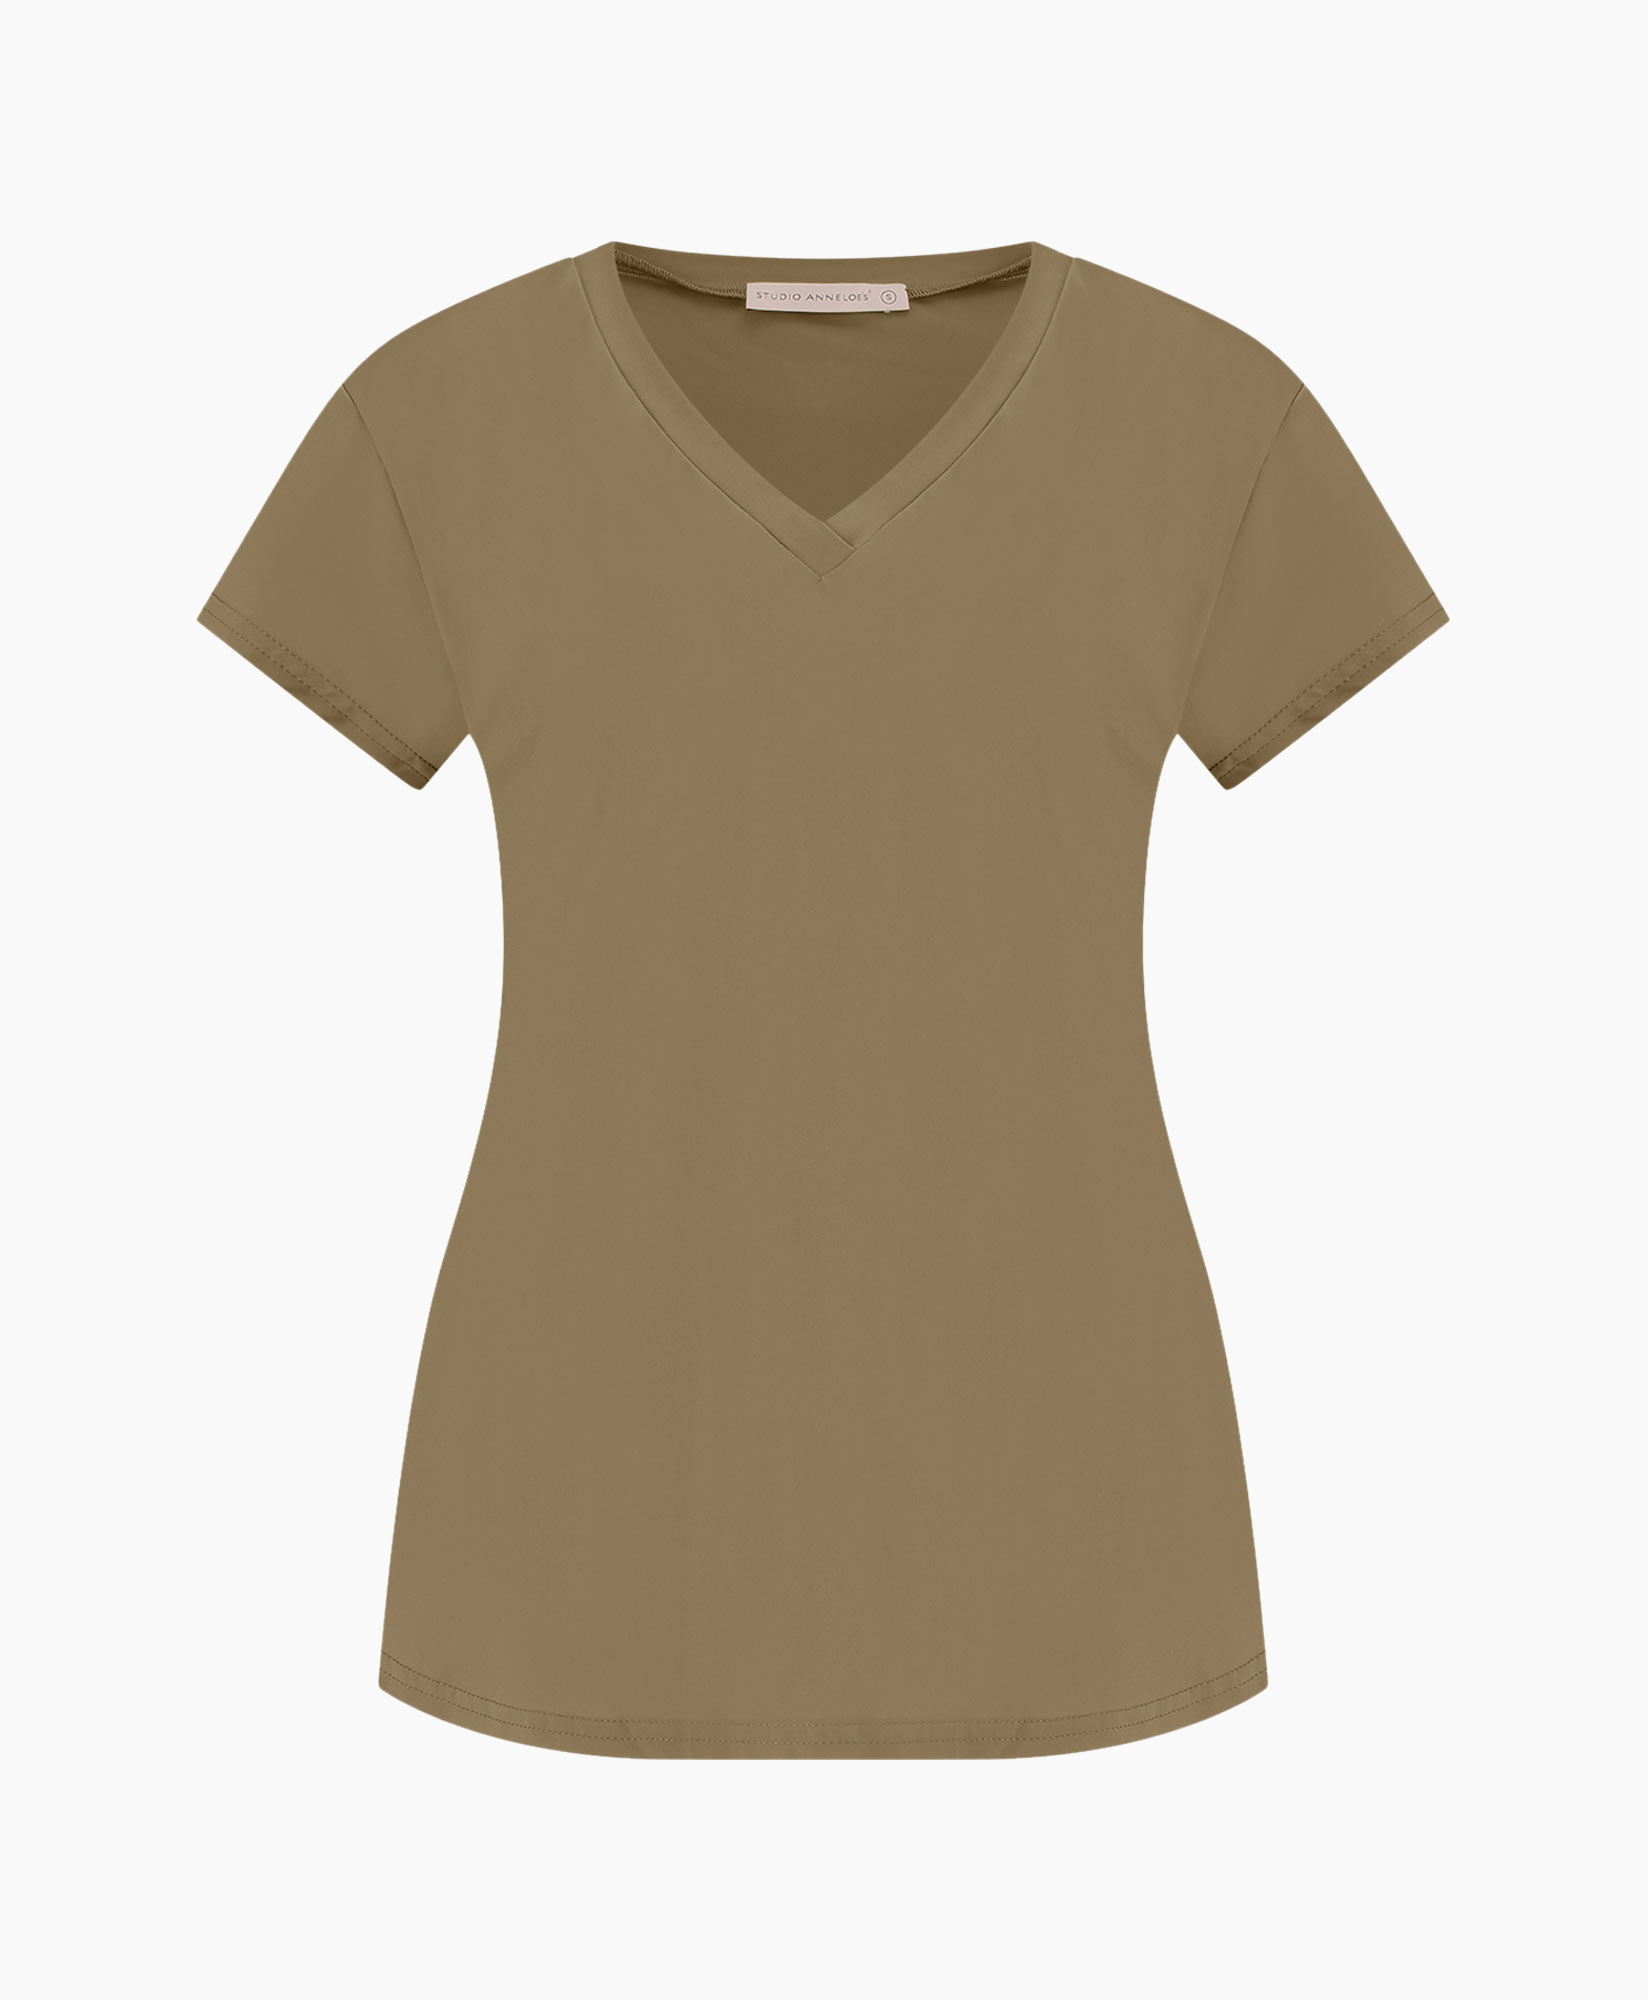 Top & T-shirt Roller Shirt Bruin dessin